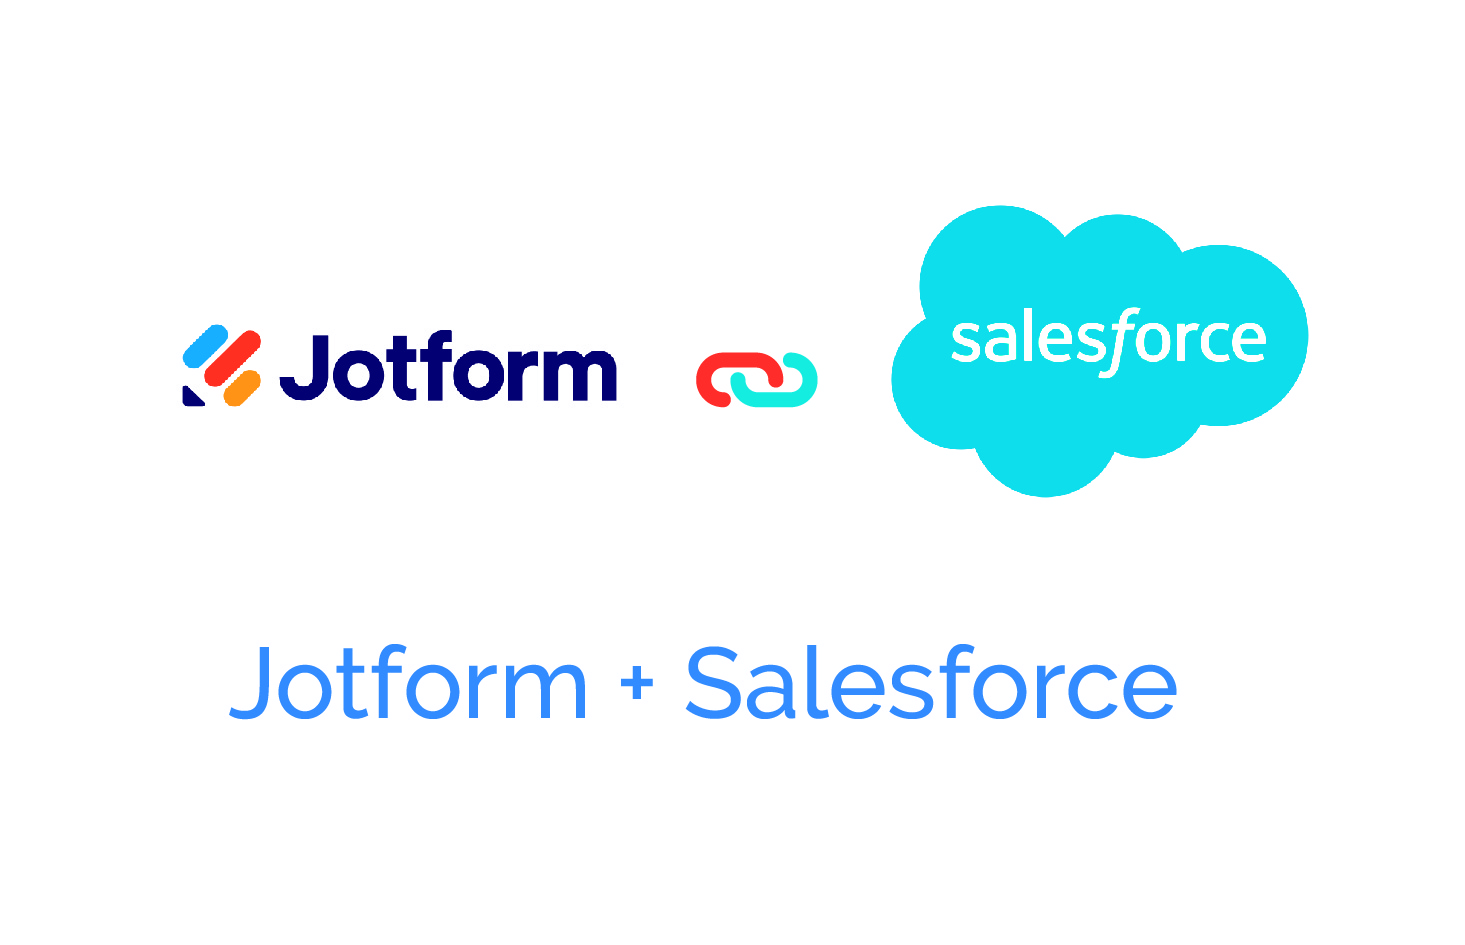 Jotform and Salesforce